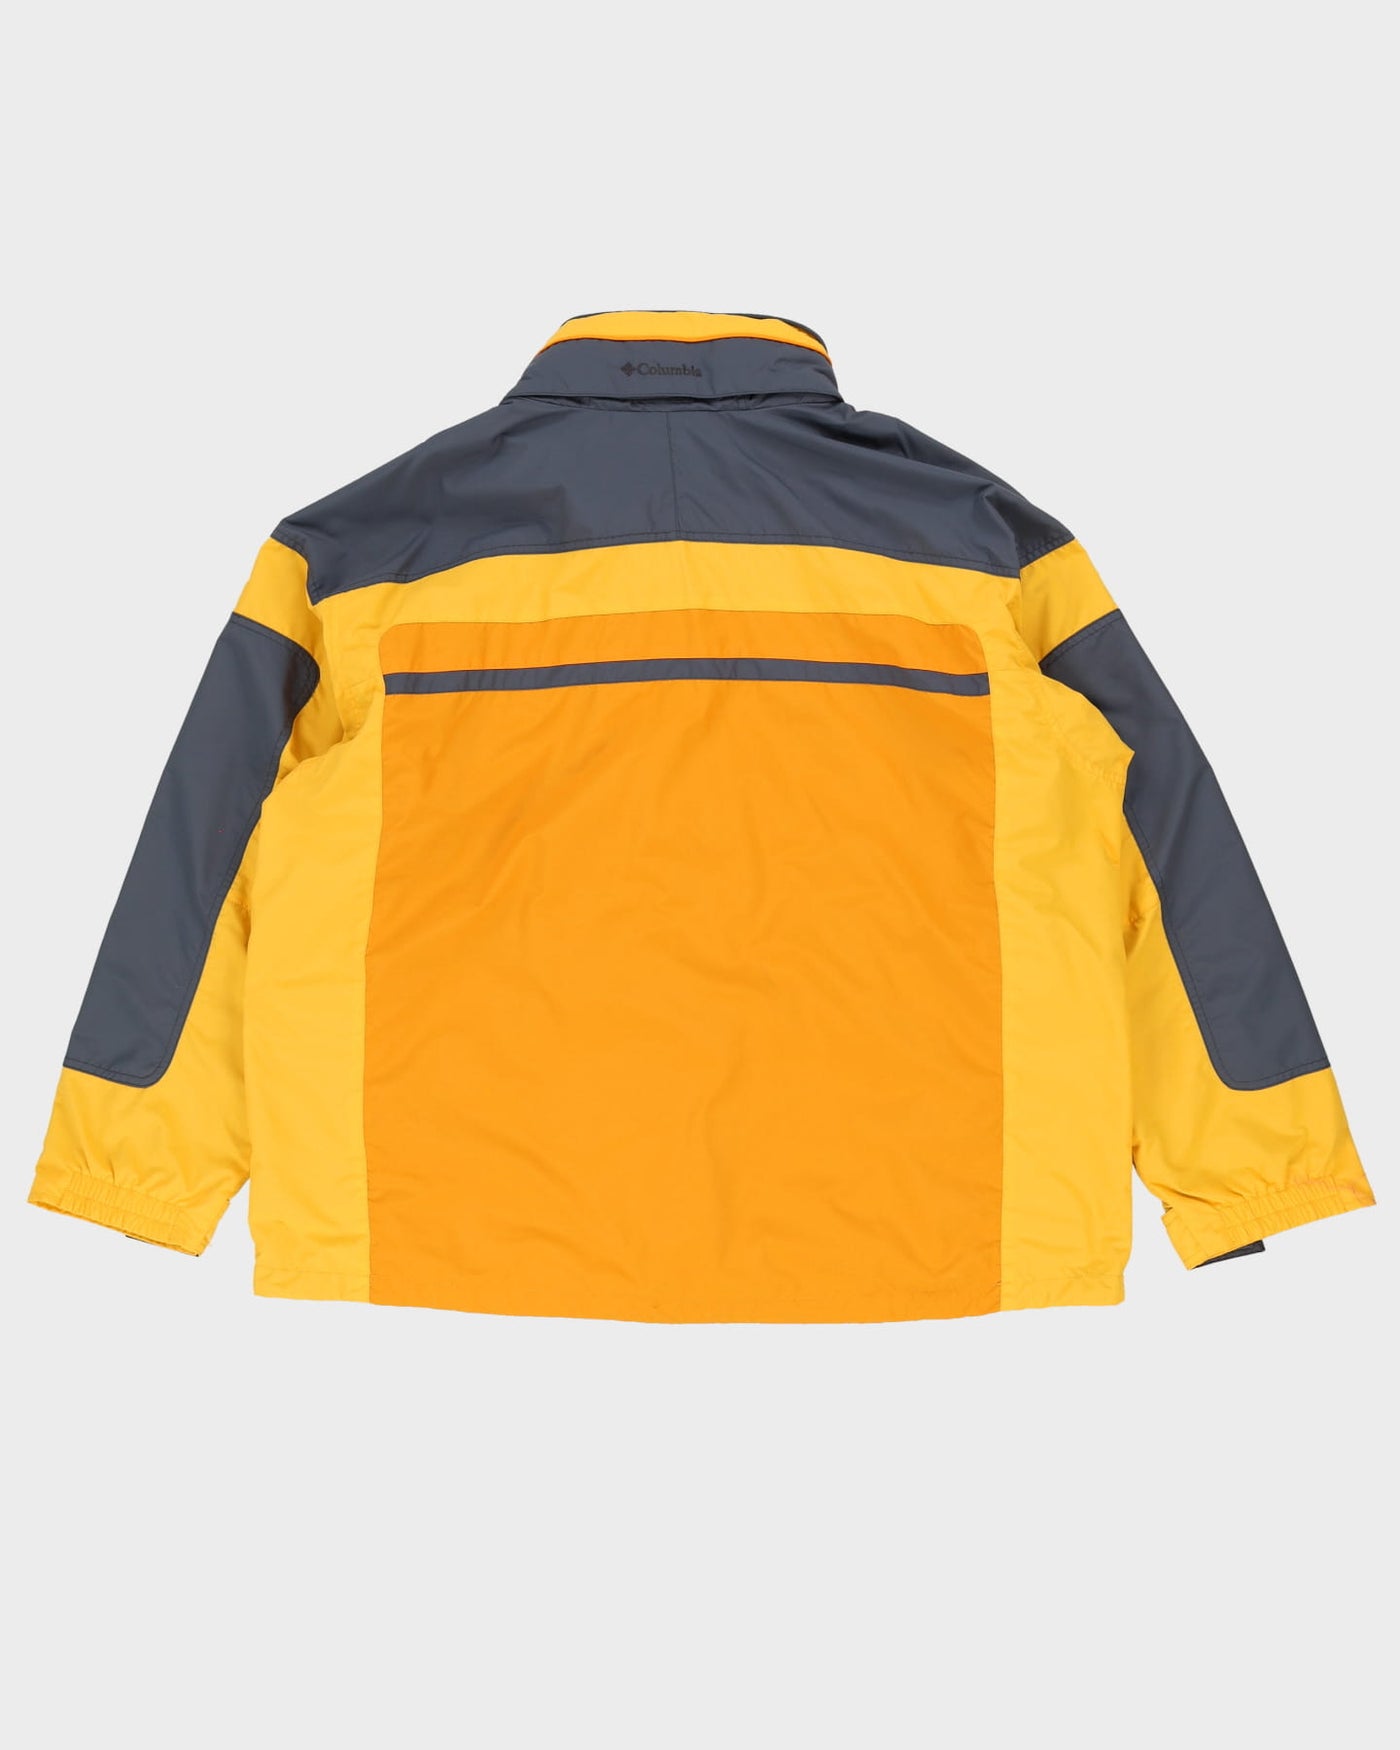 00s Columbia Yellow / Grey Hooded Anorak Jacket - XXL